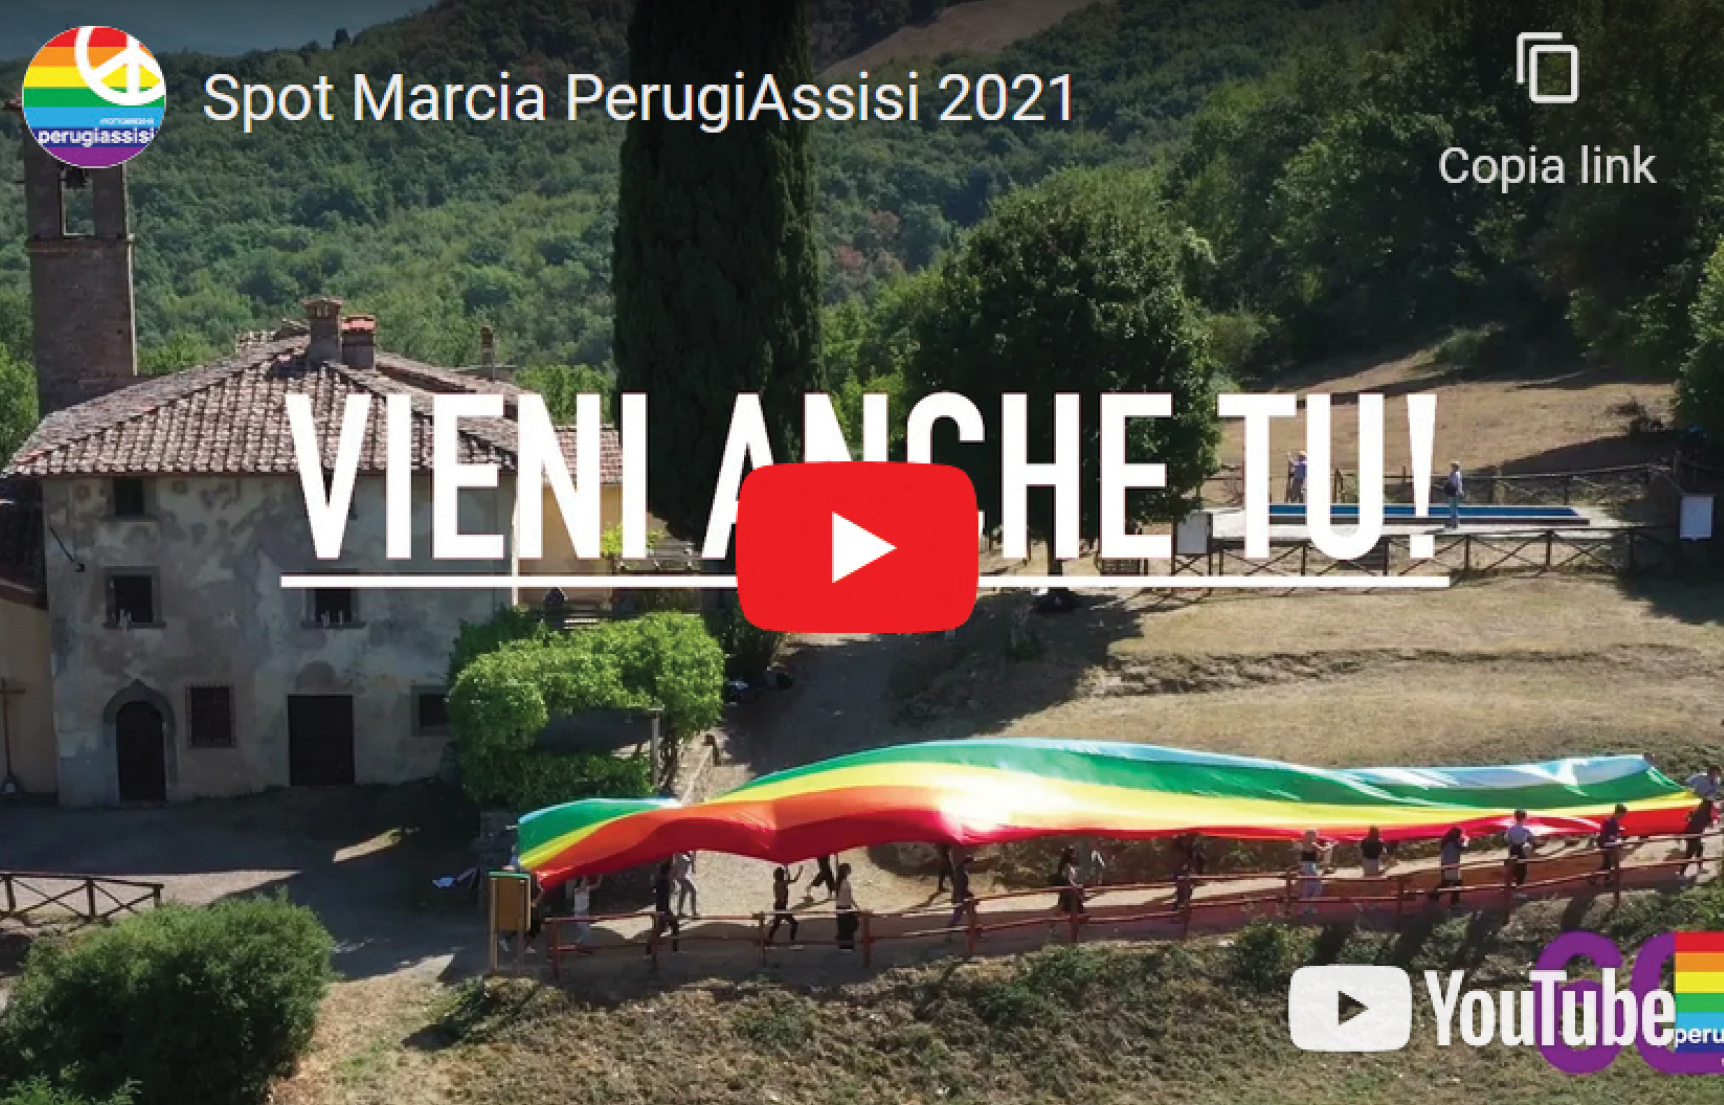 10 ottobre, partecipare alla marcia per la Pace Perugia Assisi